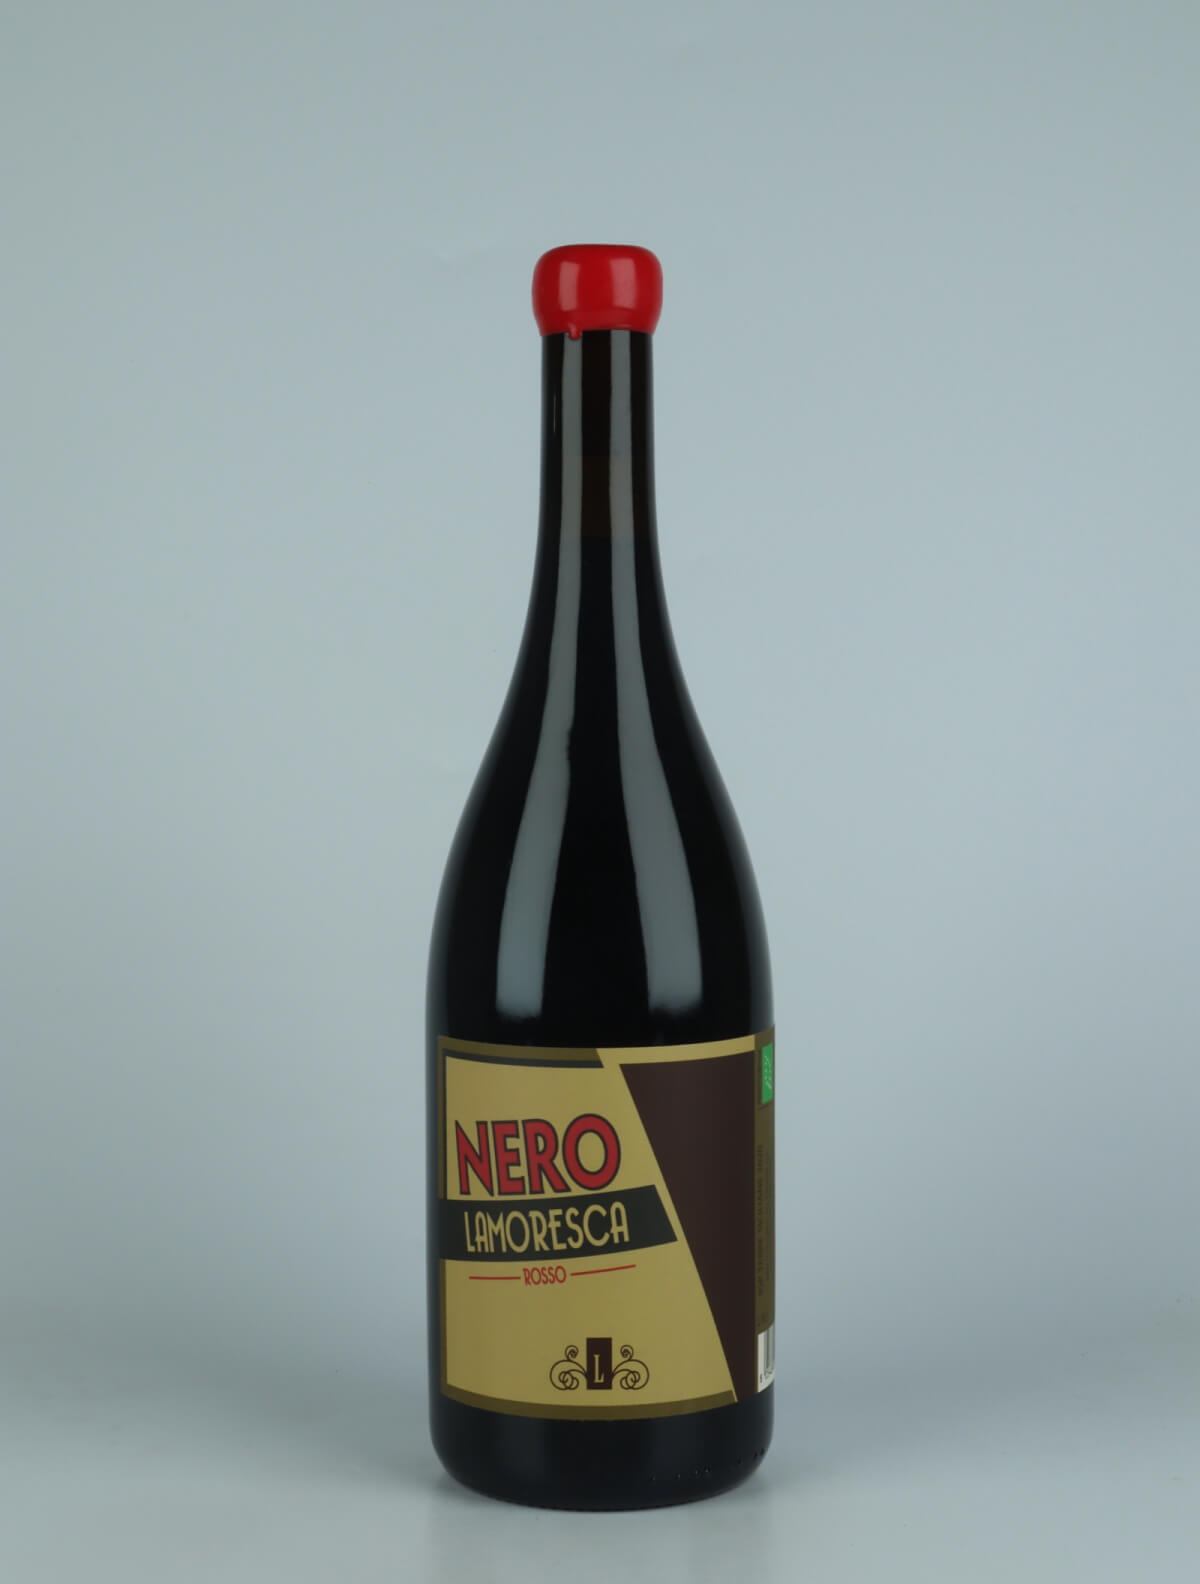 En flaske 2020 Nero Rødvin fra Lamoresca, Sicilien i Italien